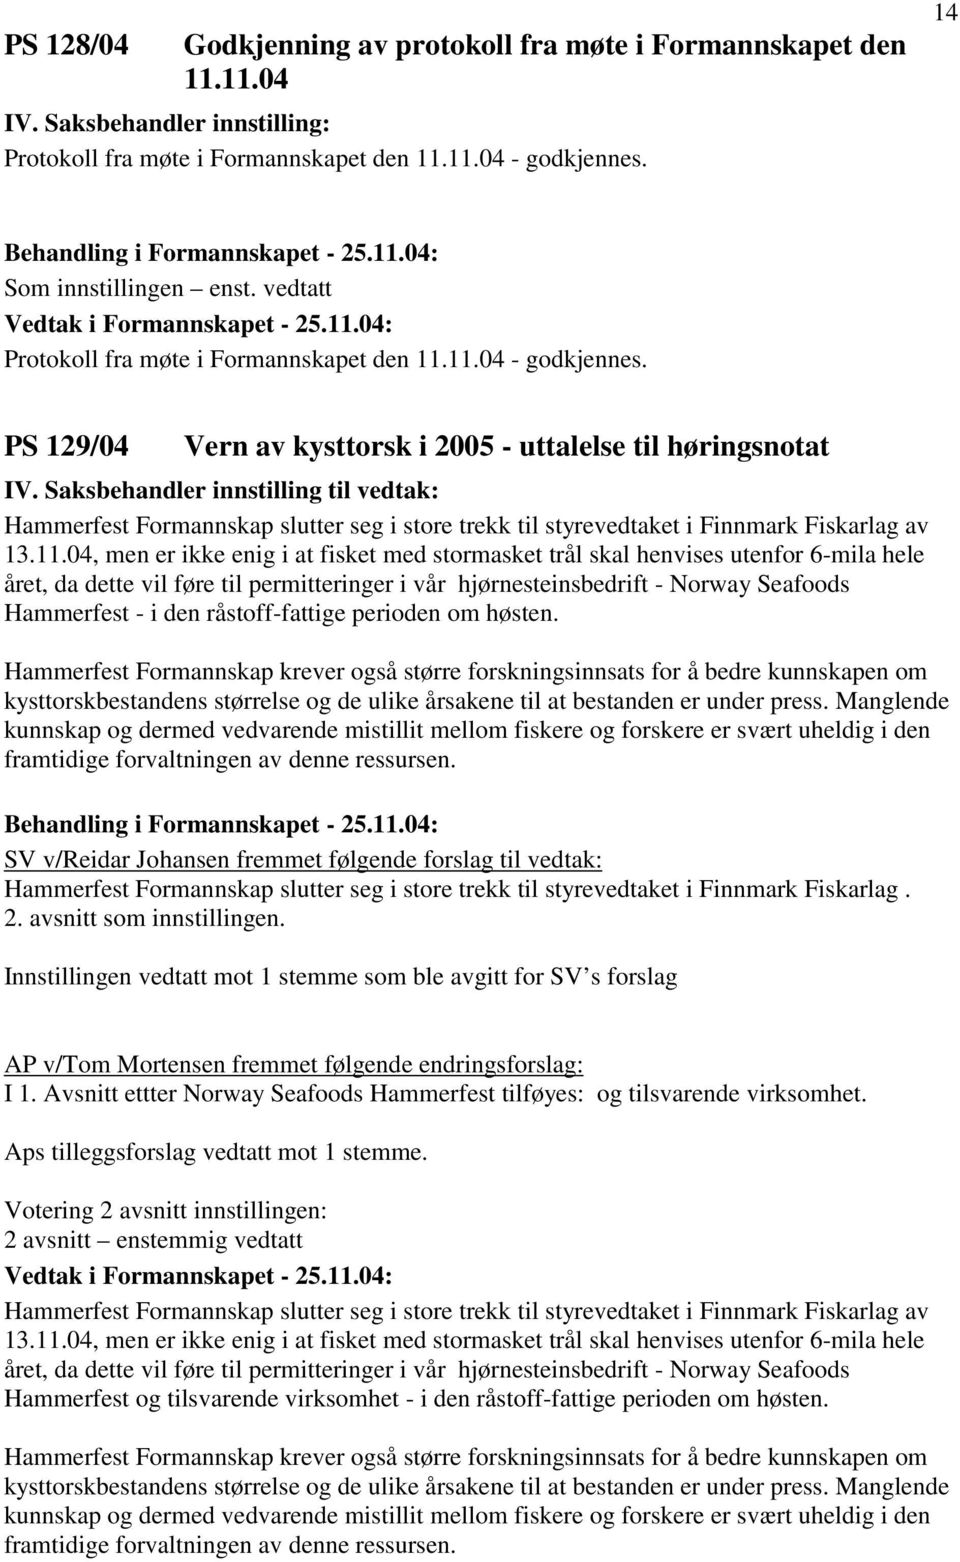 Saksbehandler innstilling til vedtak: Hammerfest Formannskap slutter seg i store trekk til styrevedtaket i Finnmark Fiskarlag av 13.11.